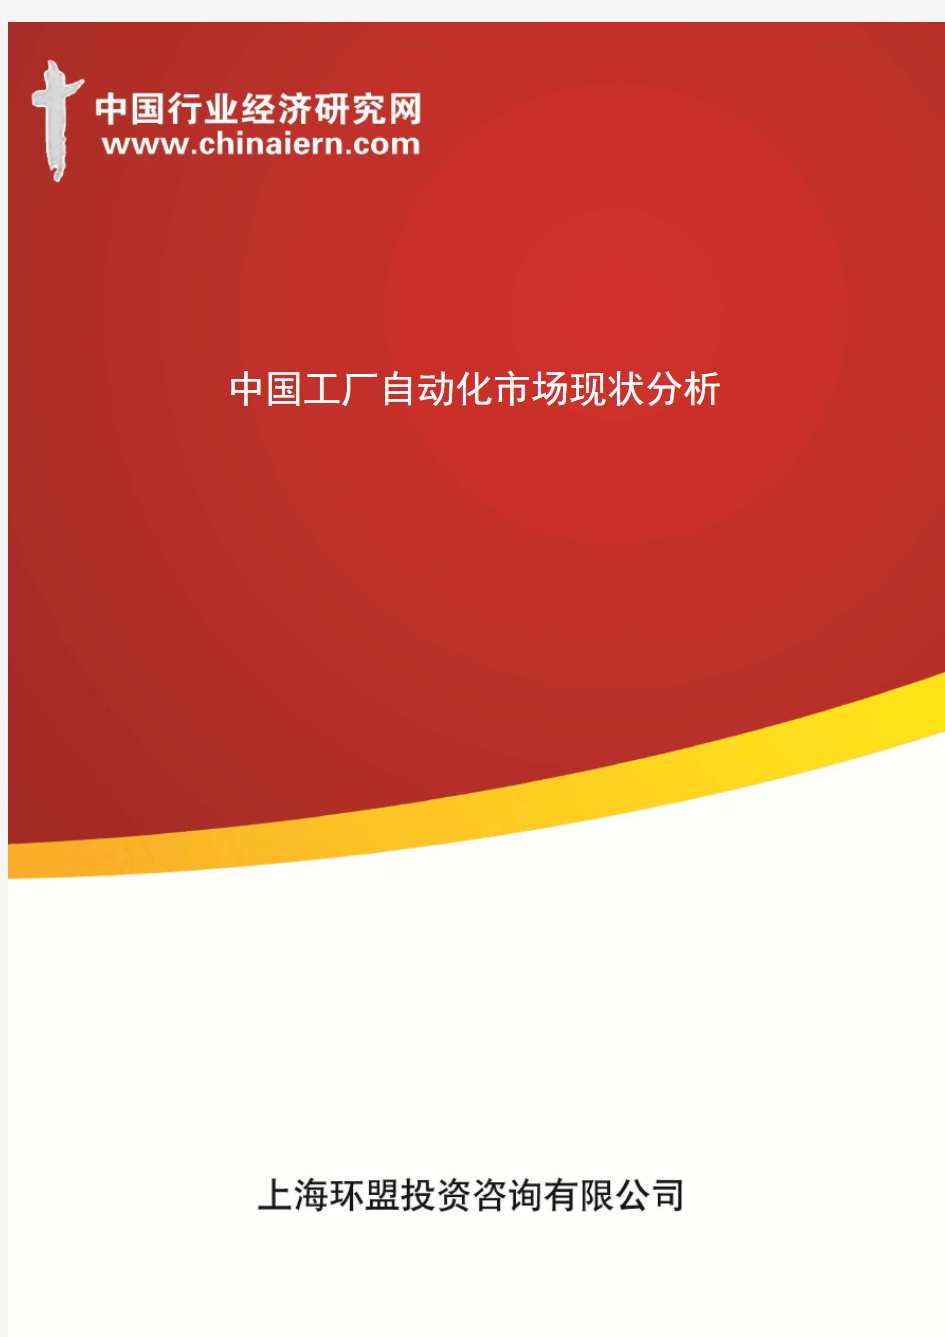 中国工厂自动化市场现状分析(上海环盟)